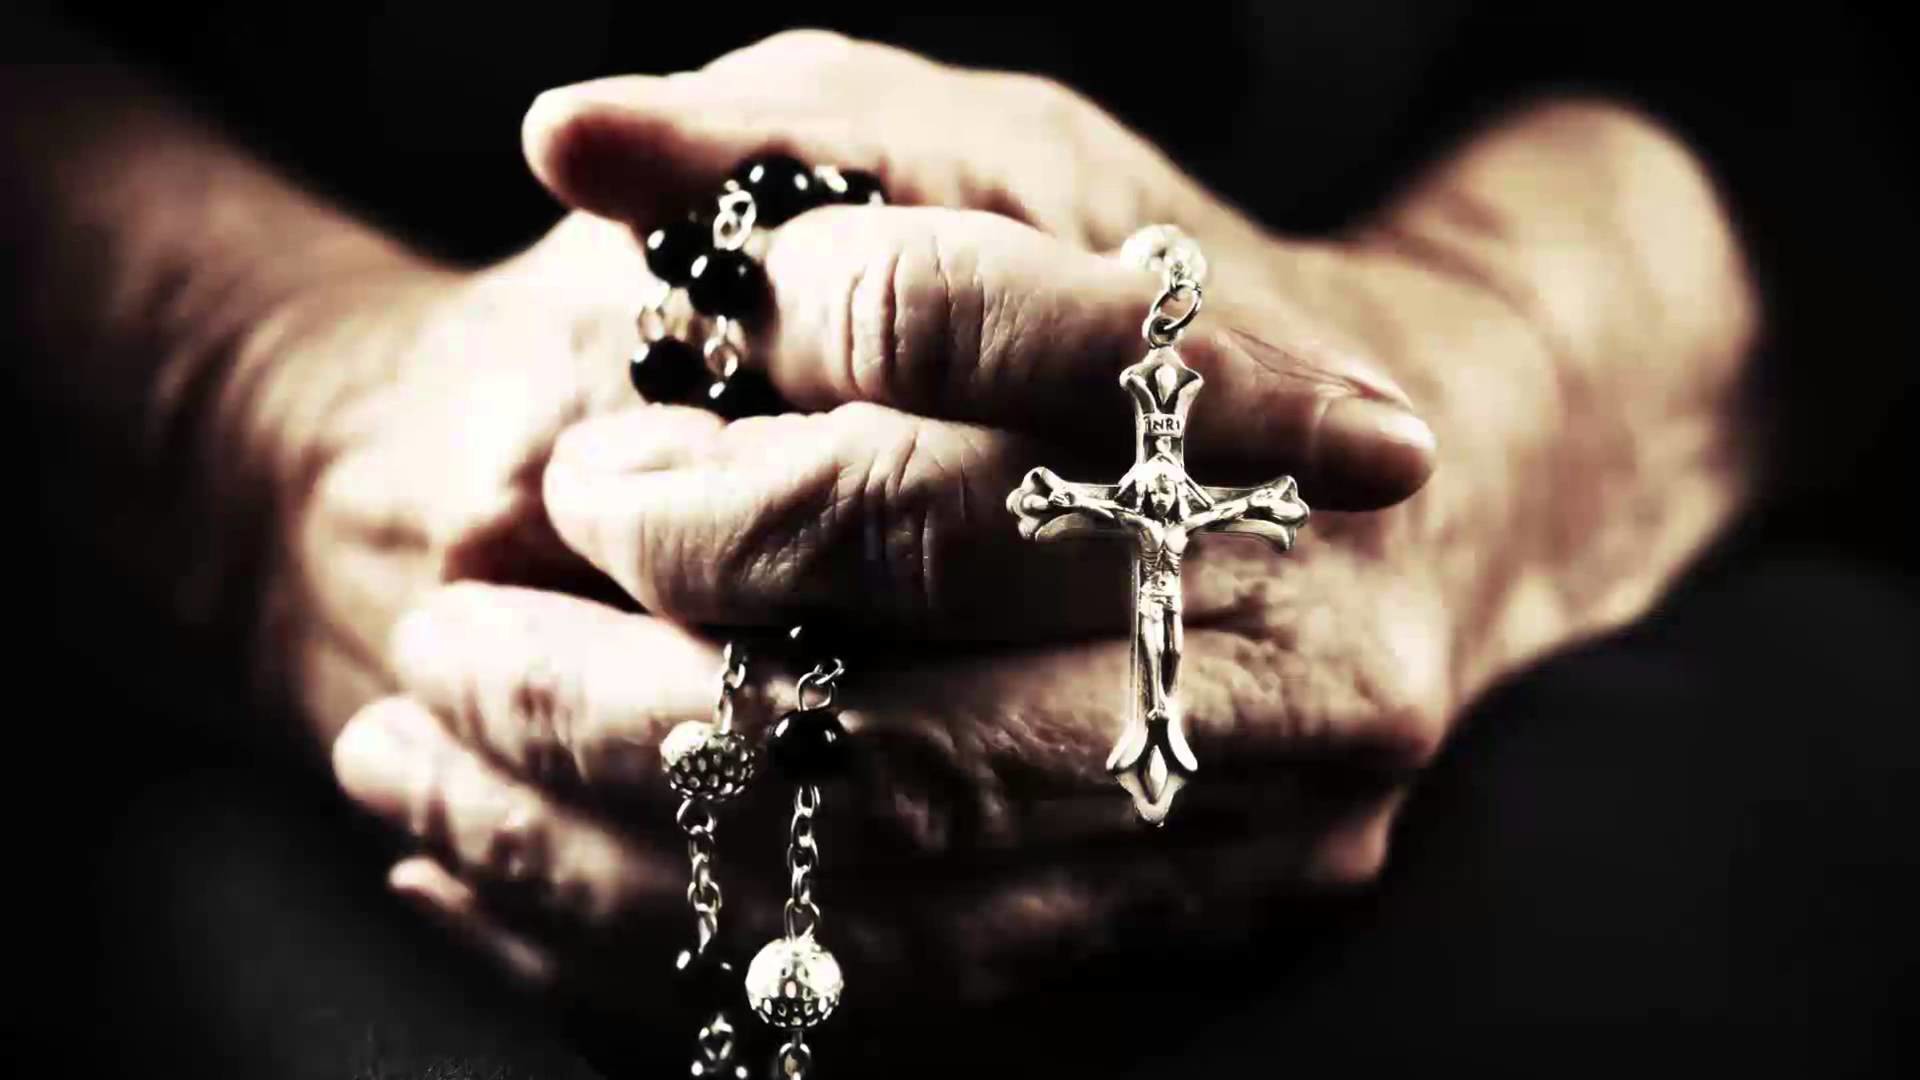 preghiera sfondo hd,oggetto religioso,rosario,mano,artefatto,crocifisso